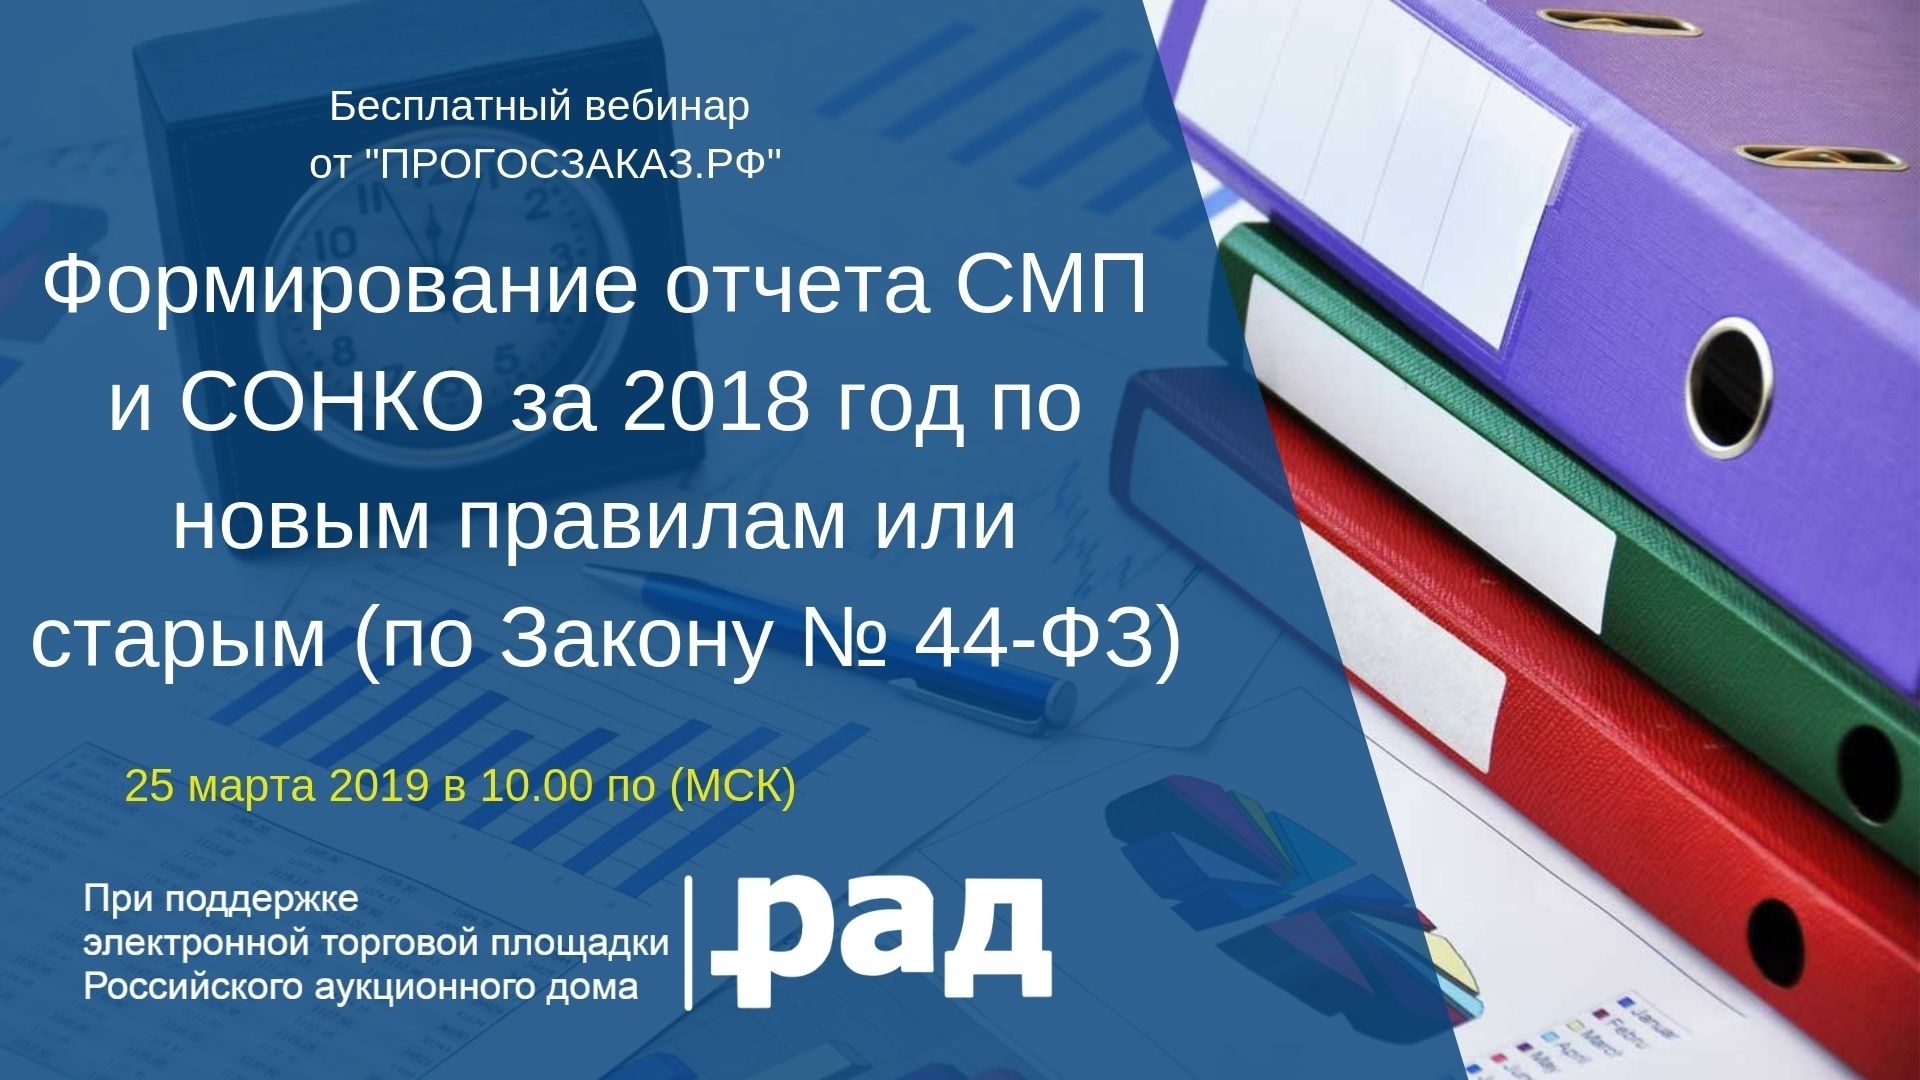 25 марта 2019 года в 10:00 по МСК состоялся вебинар на тему «Формирование отчета СМП и СОНКО за 2018 год по новым правилам или старым (по Закону № 44-ФЗ)